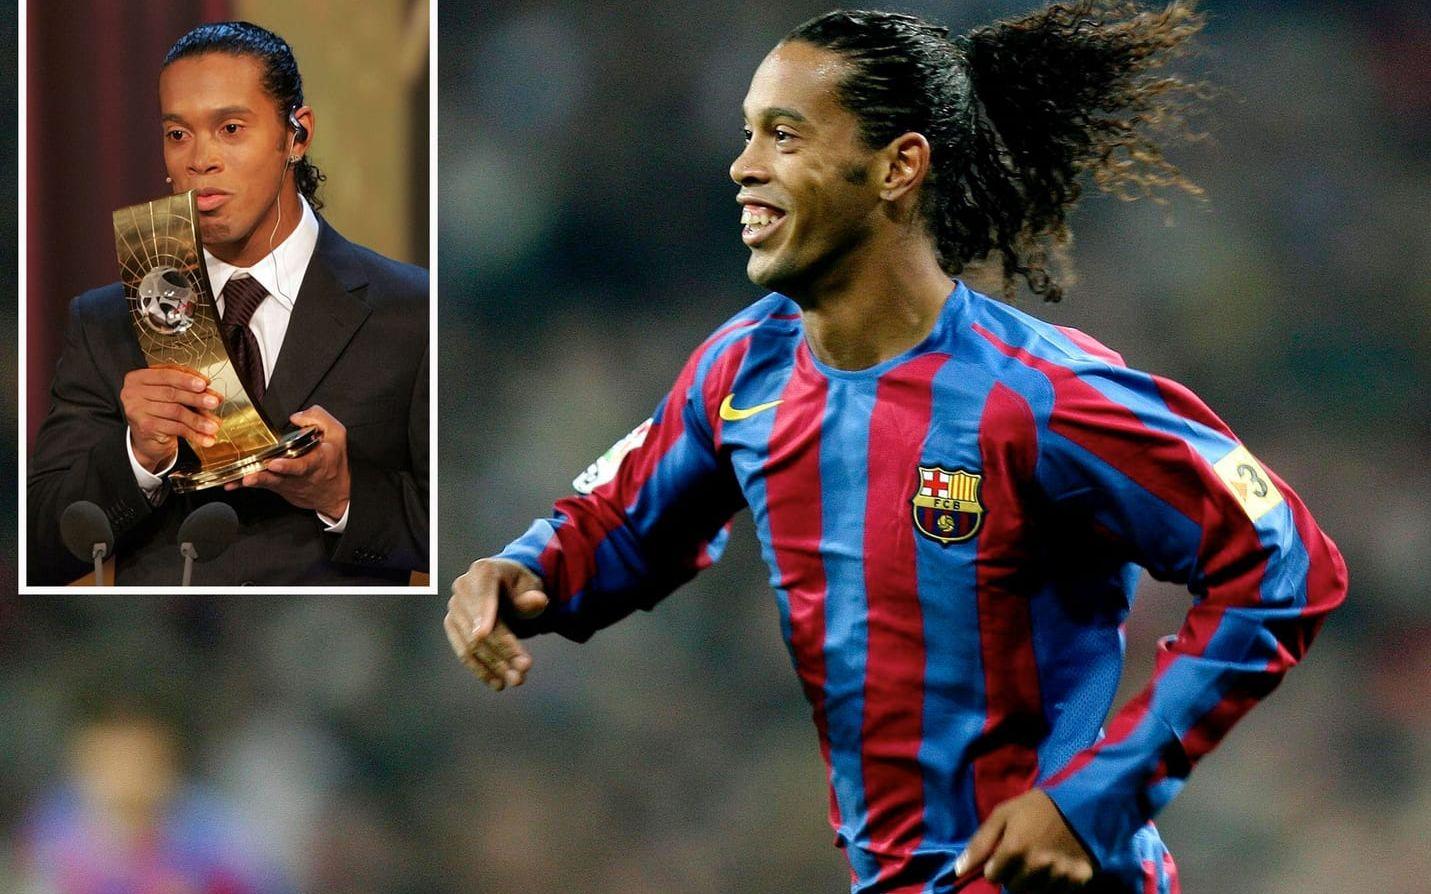 2005. Vinnare: Ronaldinho, Brasilien och Barcelona. Den här gången var Frank Lampard (Chelsea) och Samuel Eto'o (Barcelona) tvåa och trea. Foto: Bildbyrån